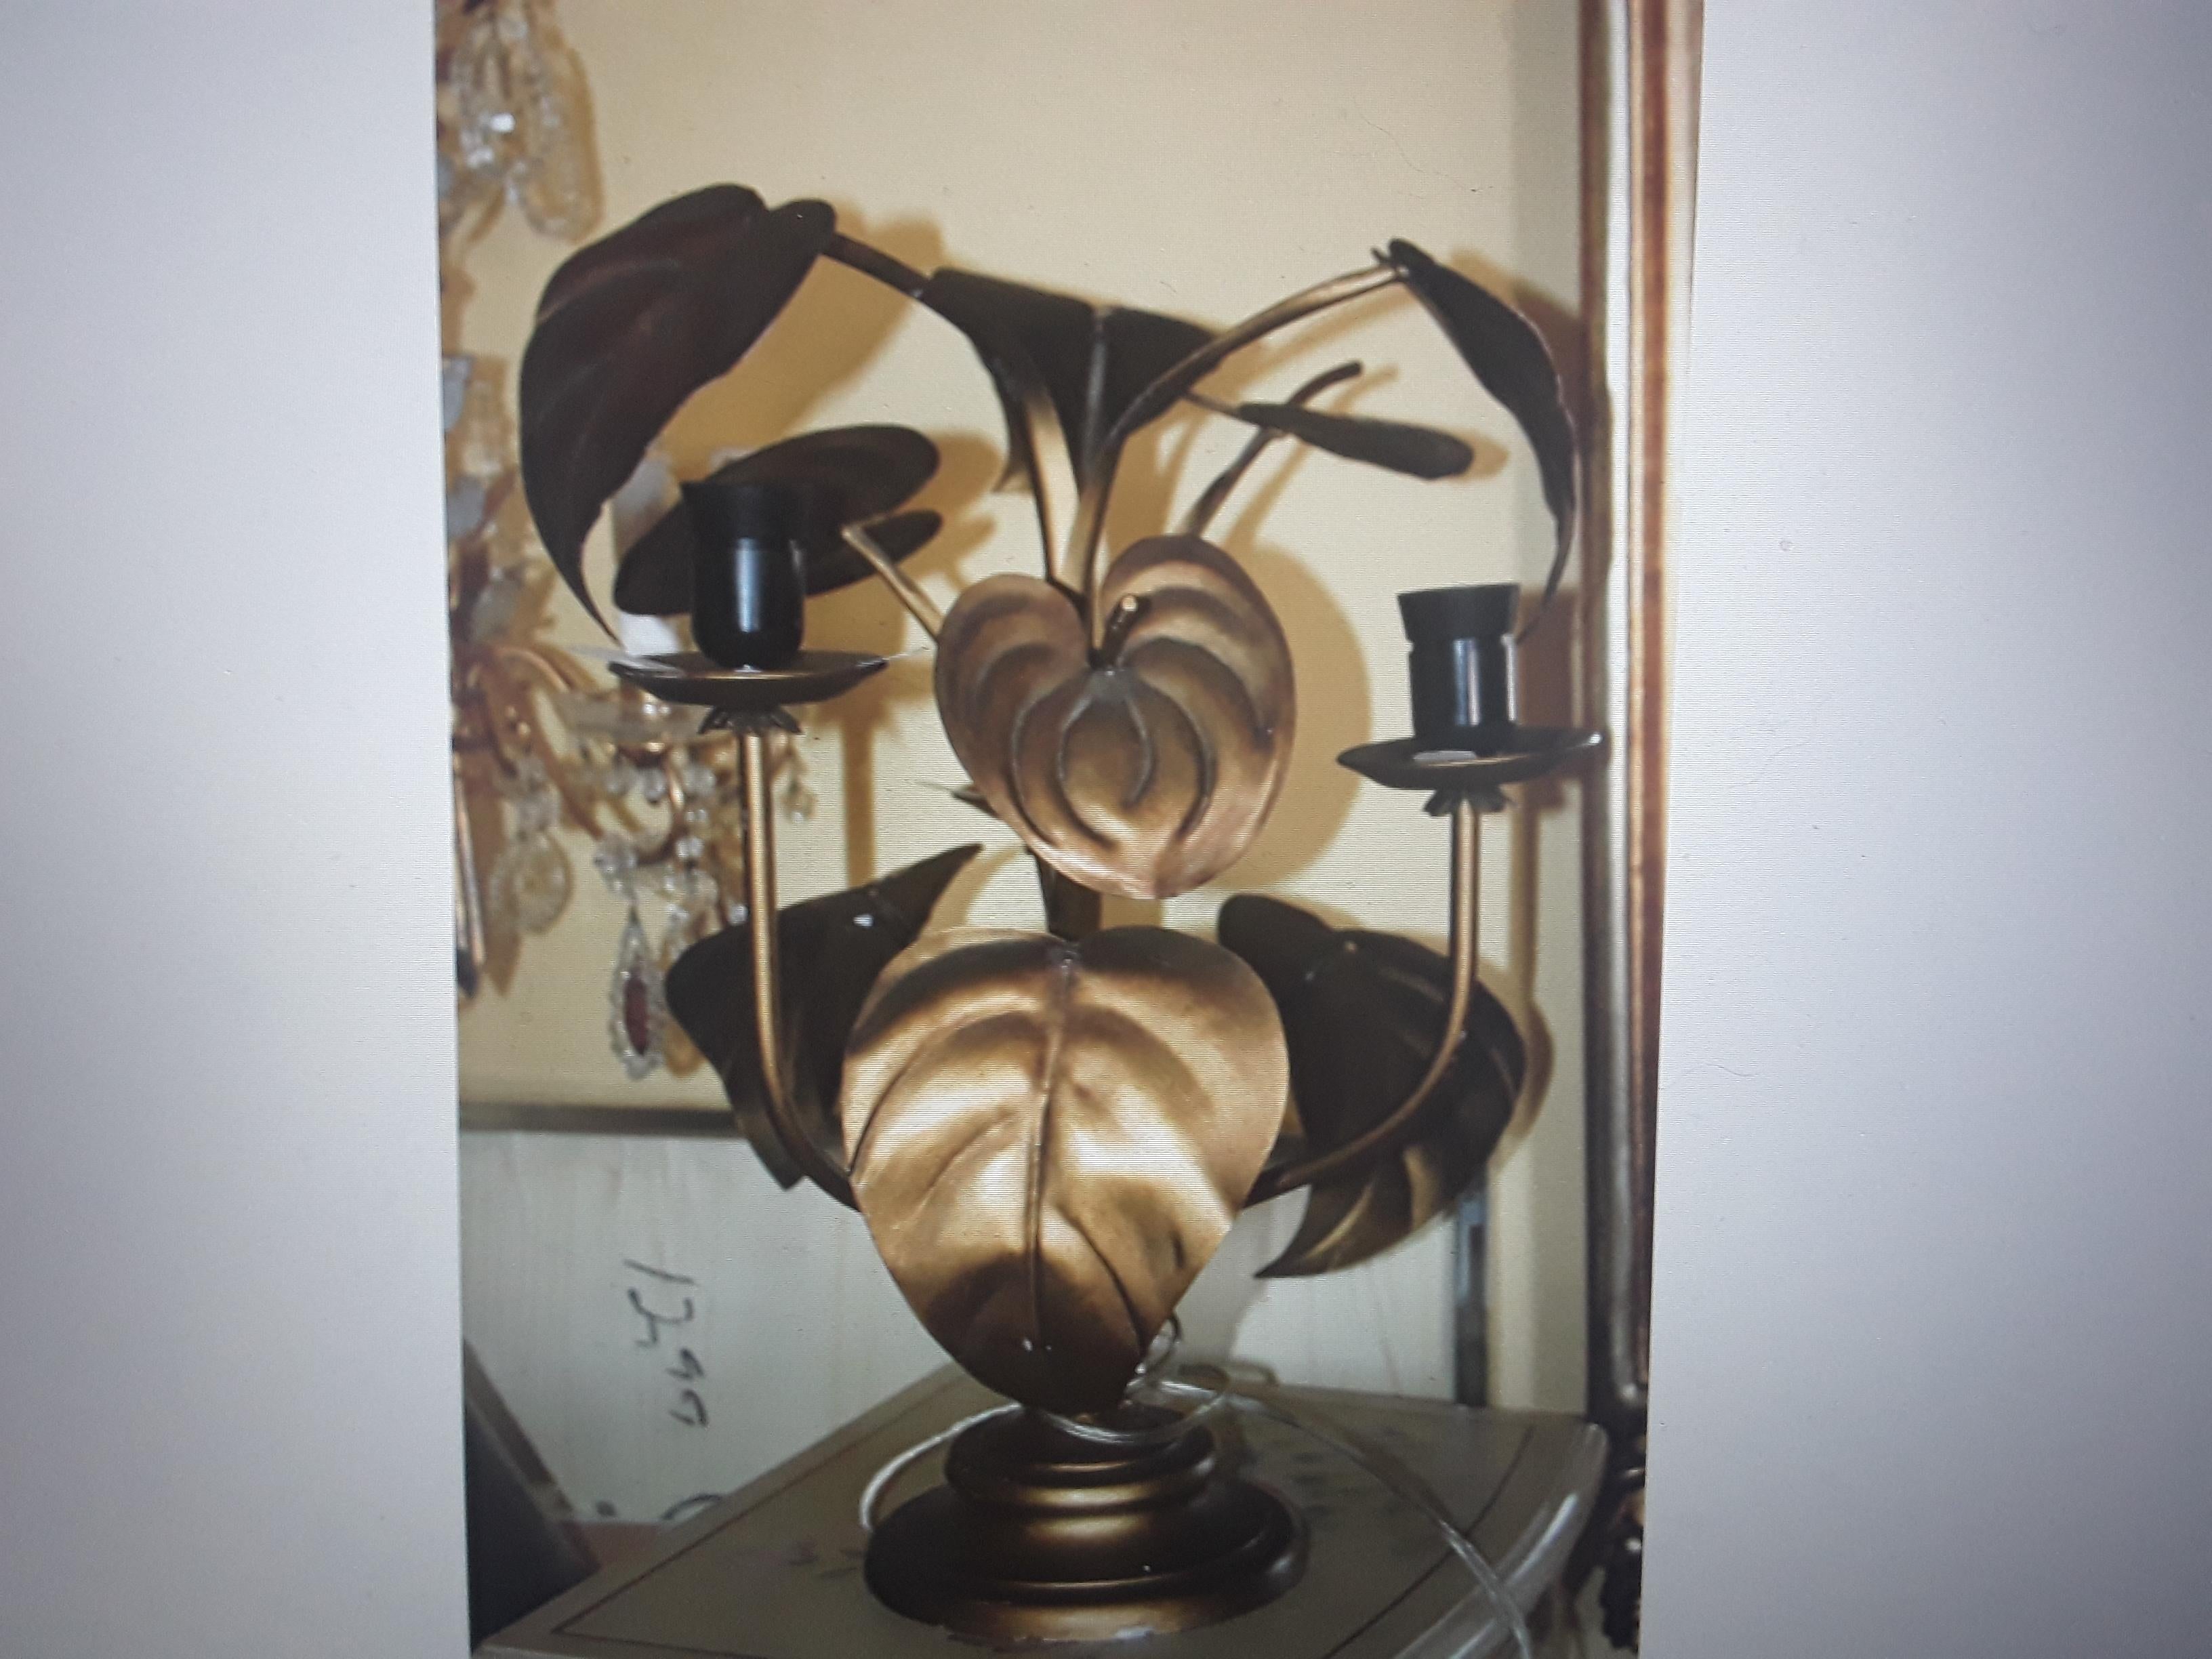 Lampe de table Anthurium en métal doré, italienne, moderne du milieu du siècle, des années 1950, attrib. Tomasso Barbi. C'est un très beau choix de lampe de table.